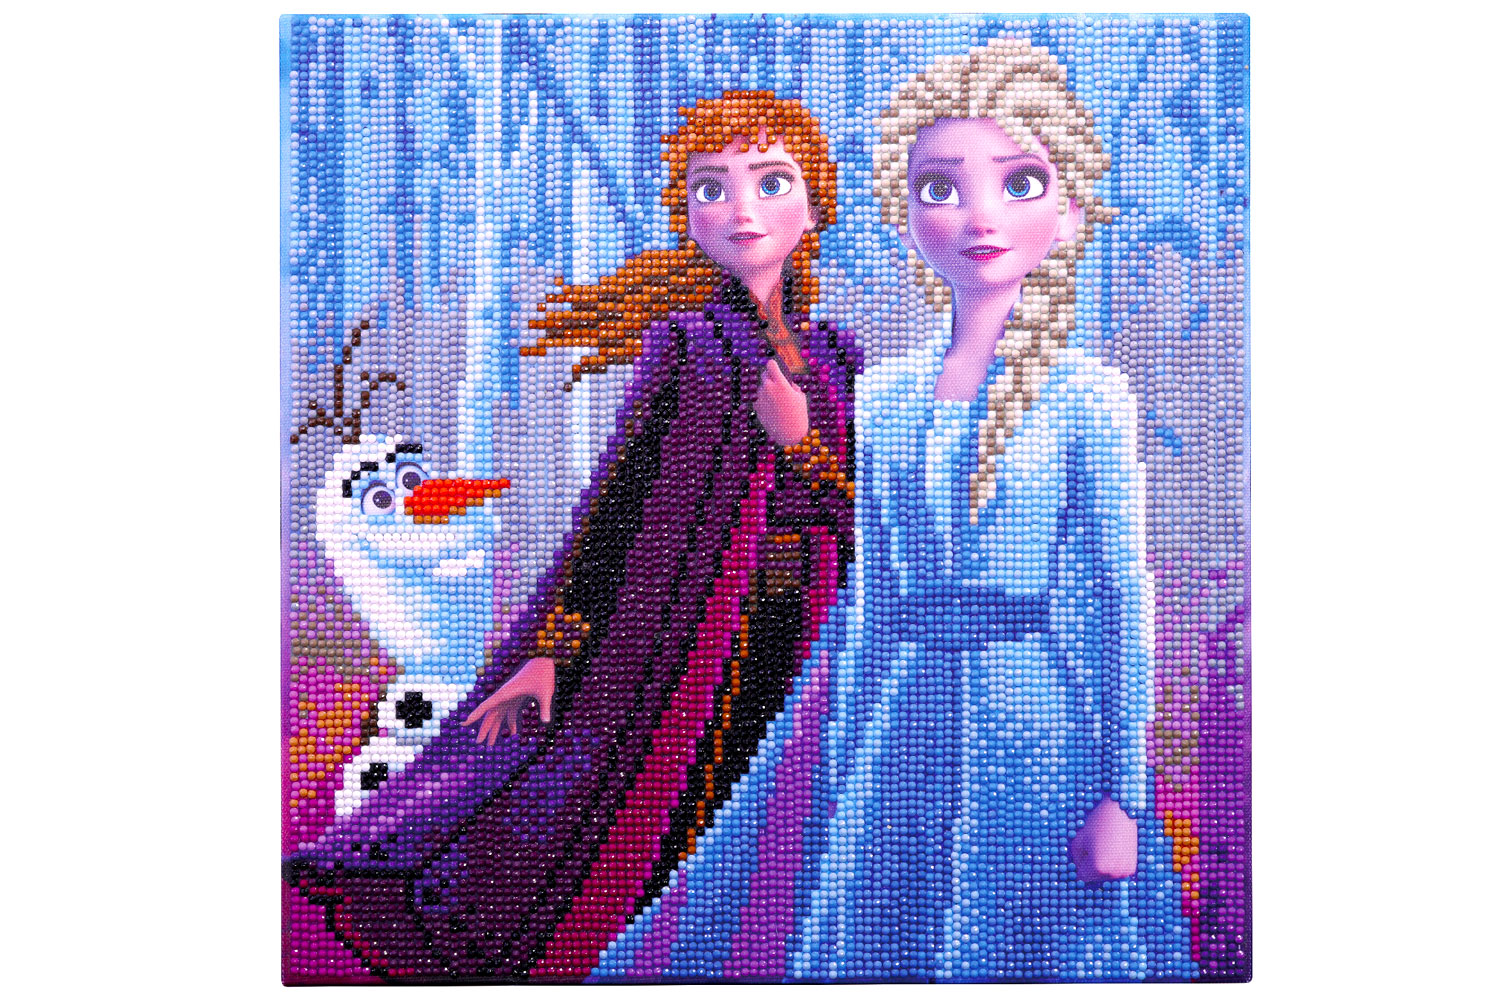 Diamond painting Elsa la reine des neiges | Beebs